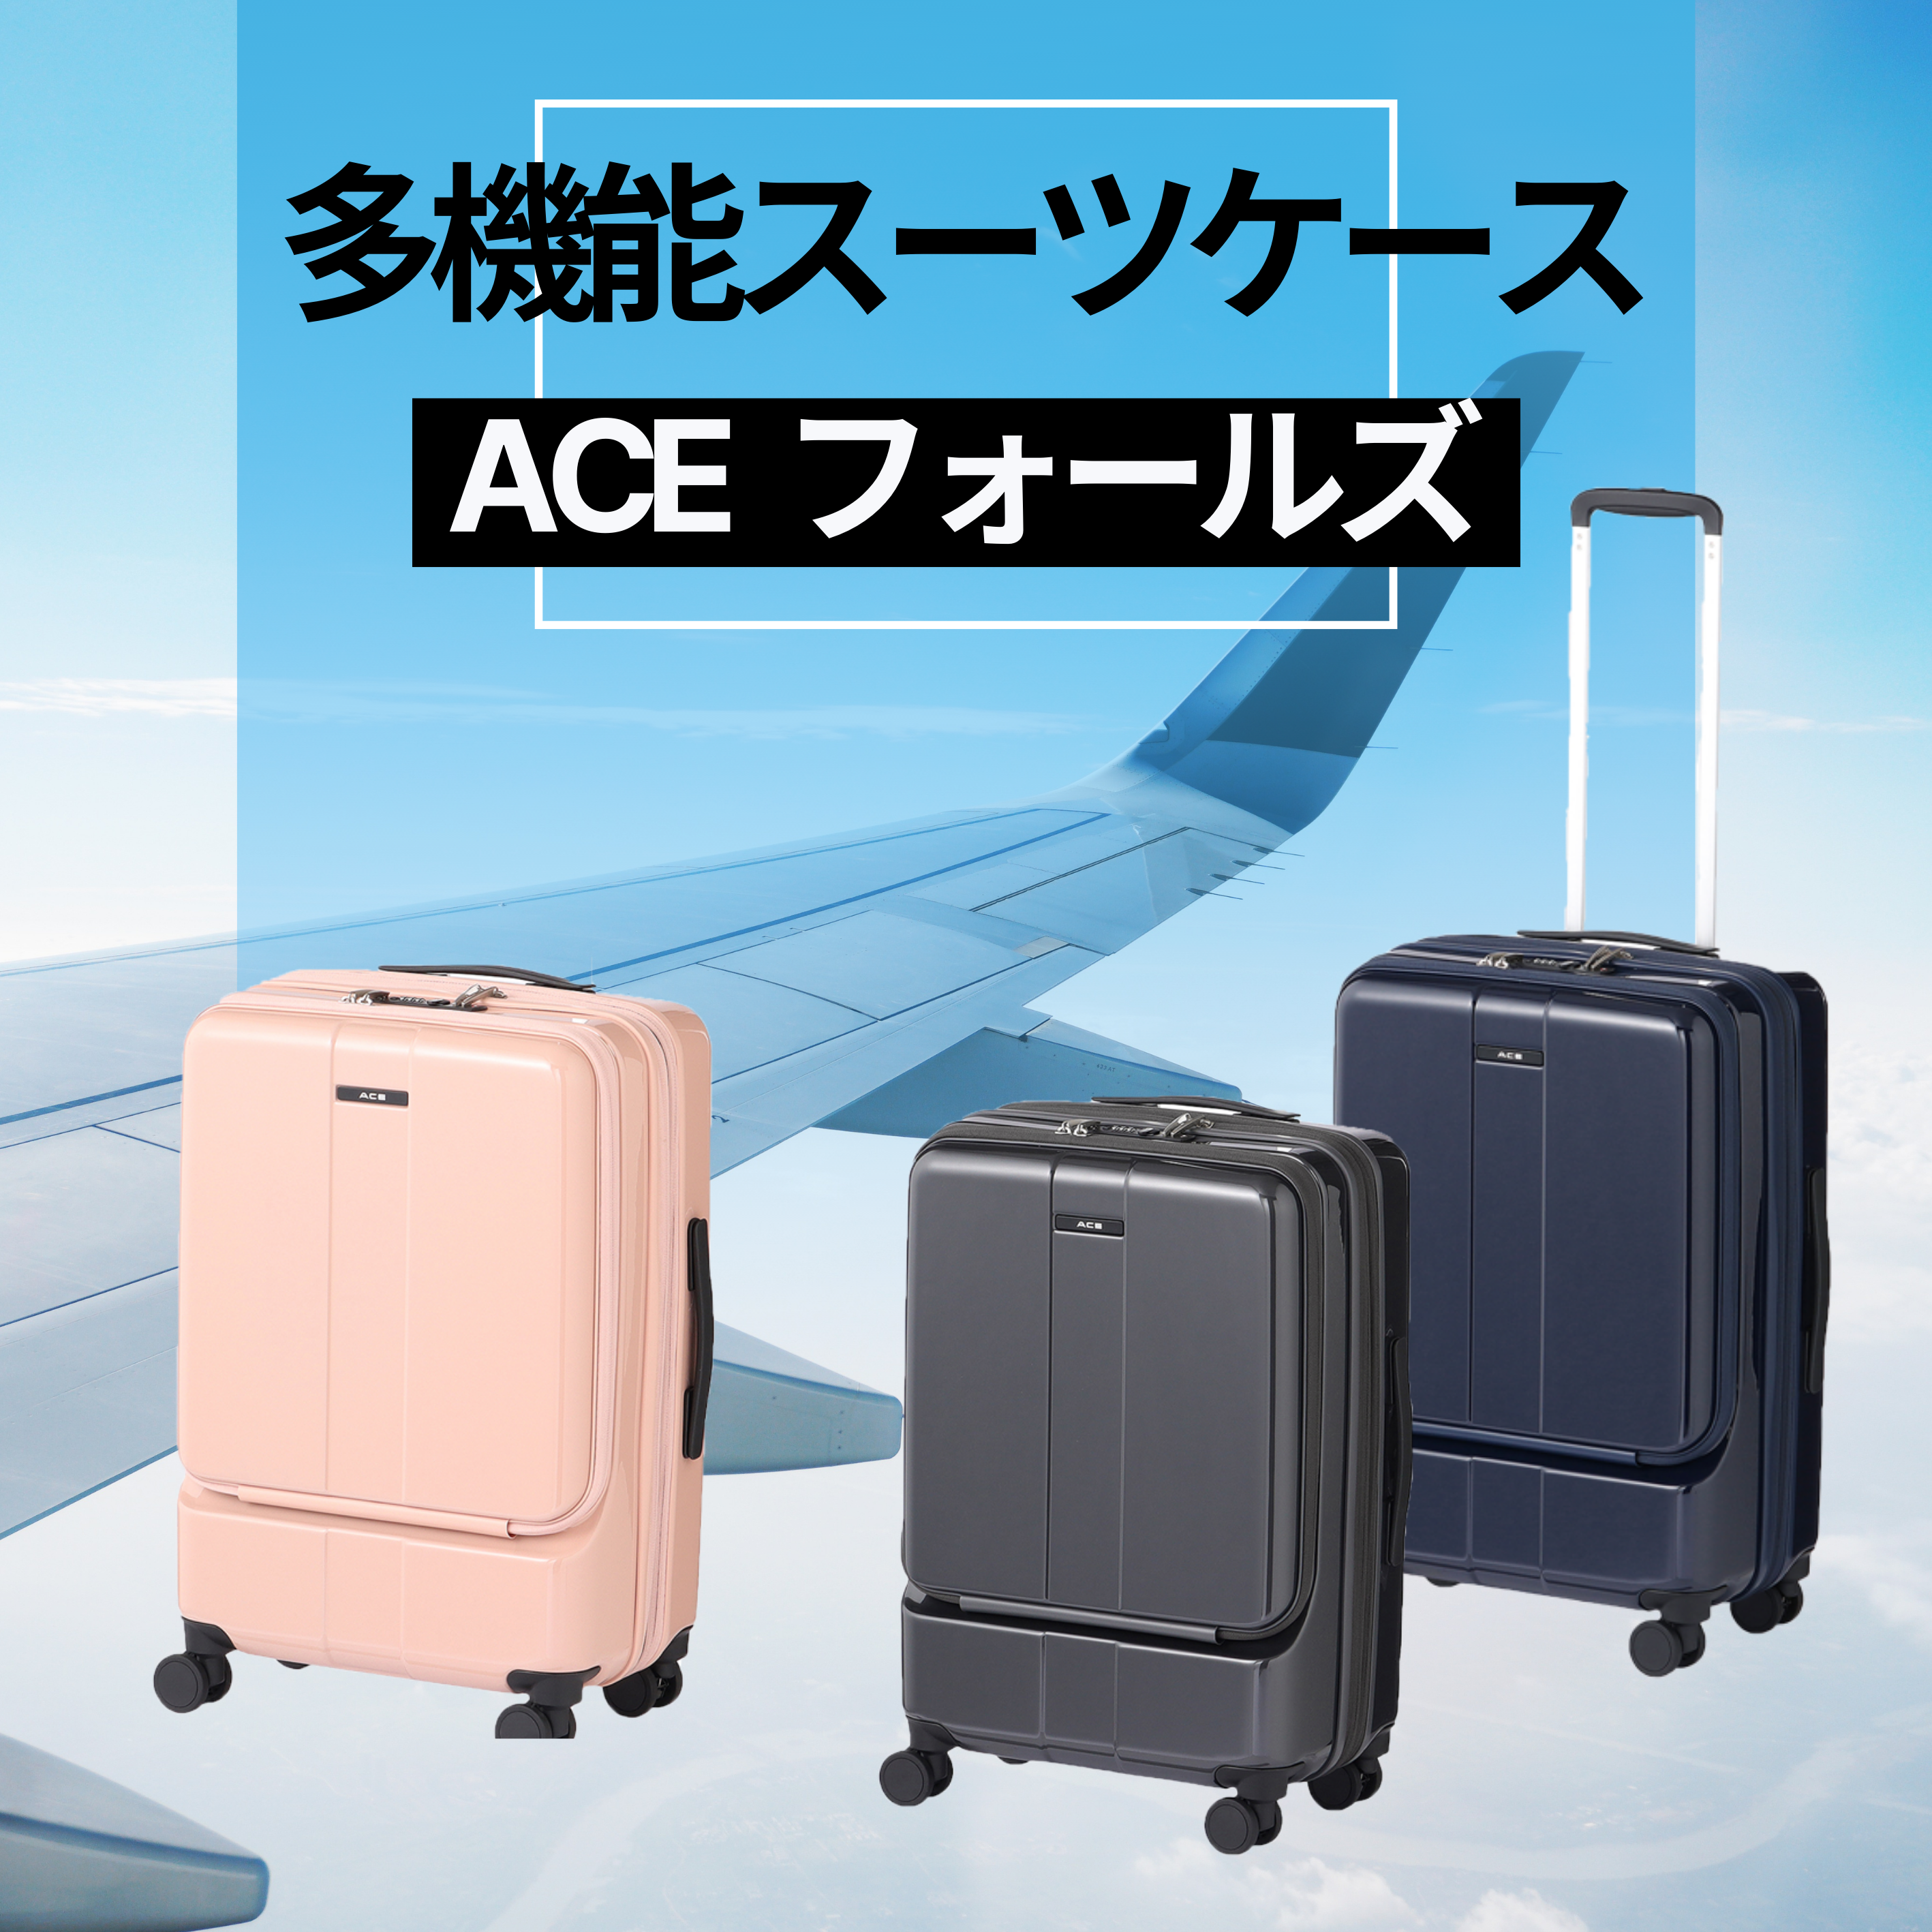 【高コスパ】多機能スーツケース「ACE フォールズ」